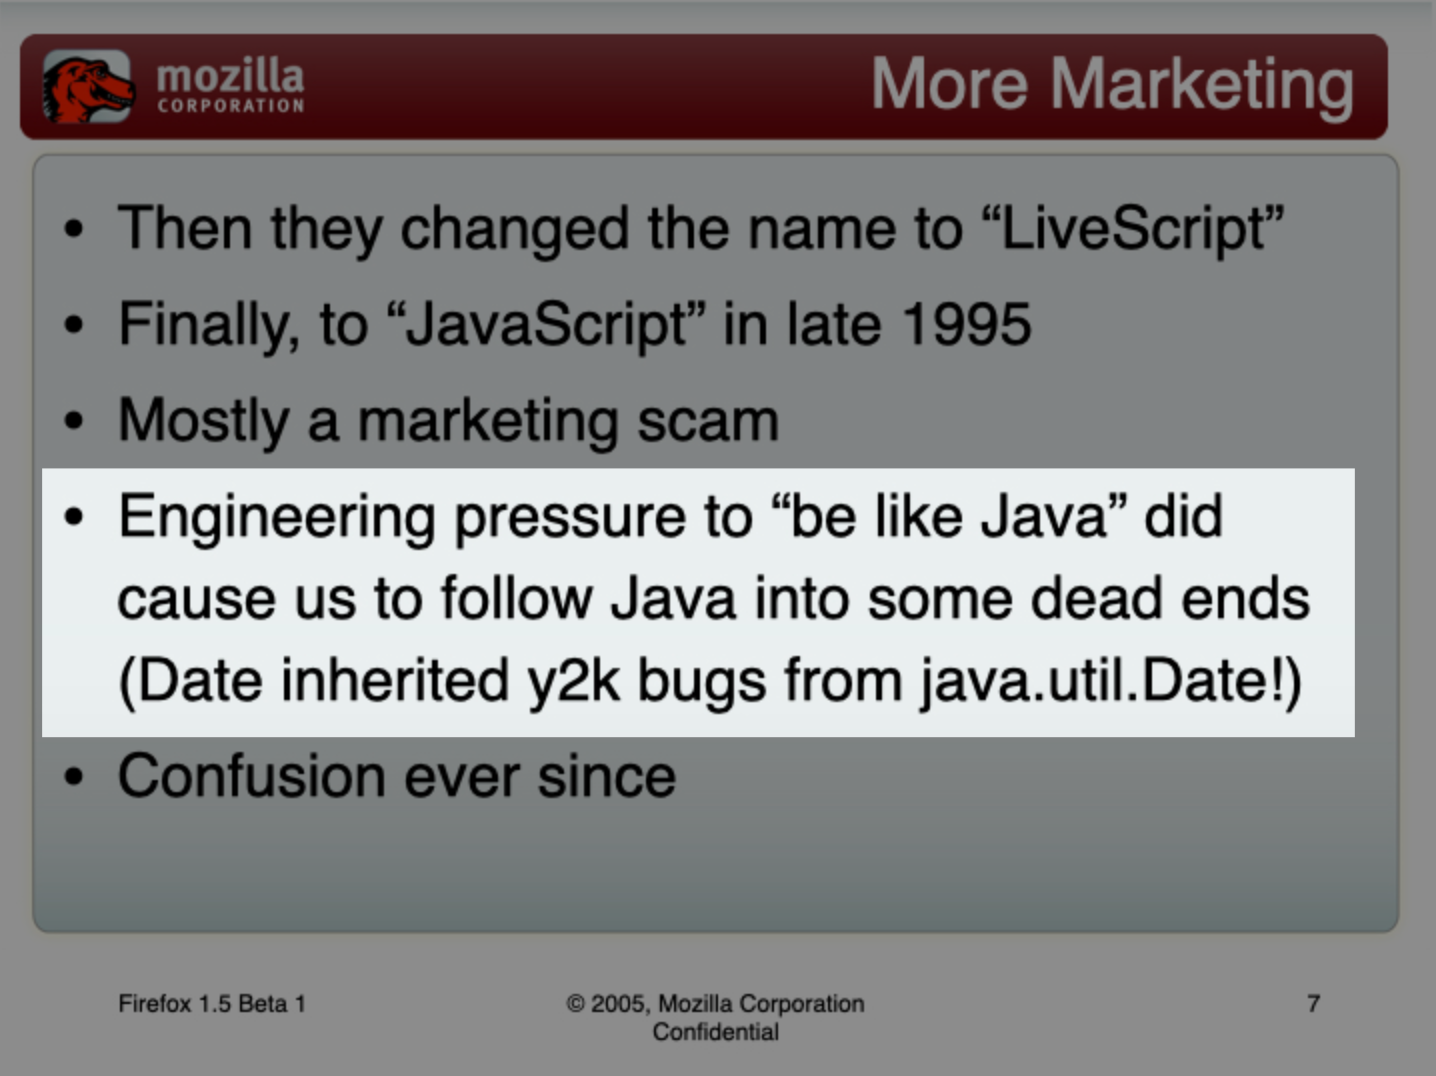 2000年問題の「バグ」をjava.util.Dateから引き継いだと指摘するMozillaによるスライド